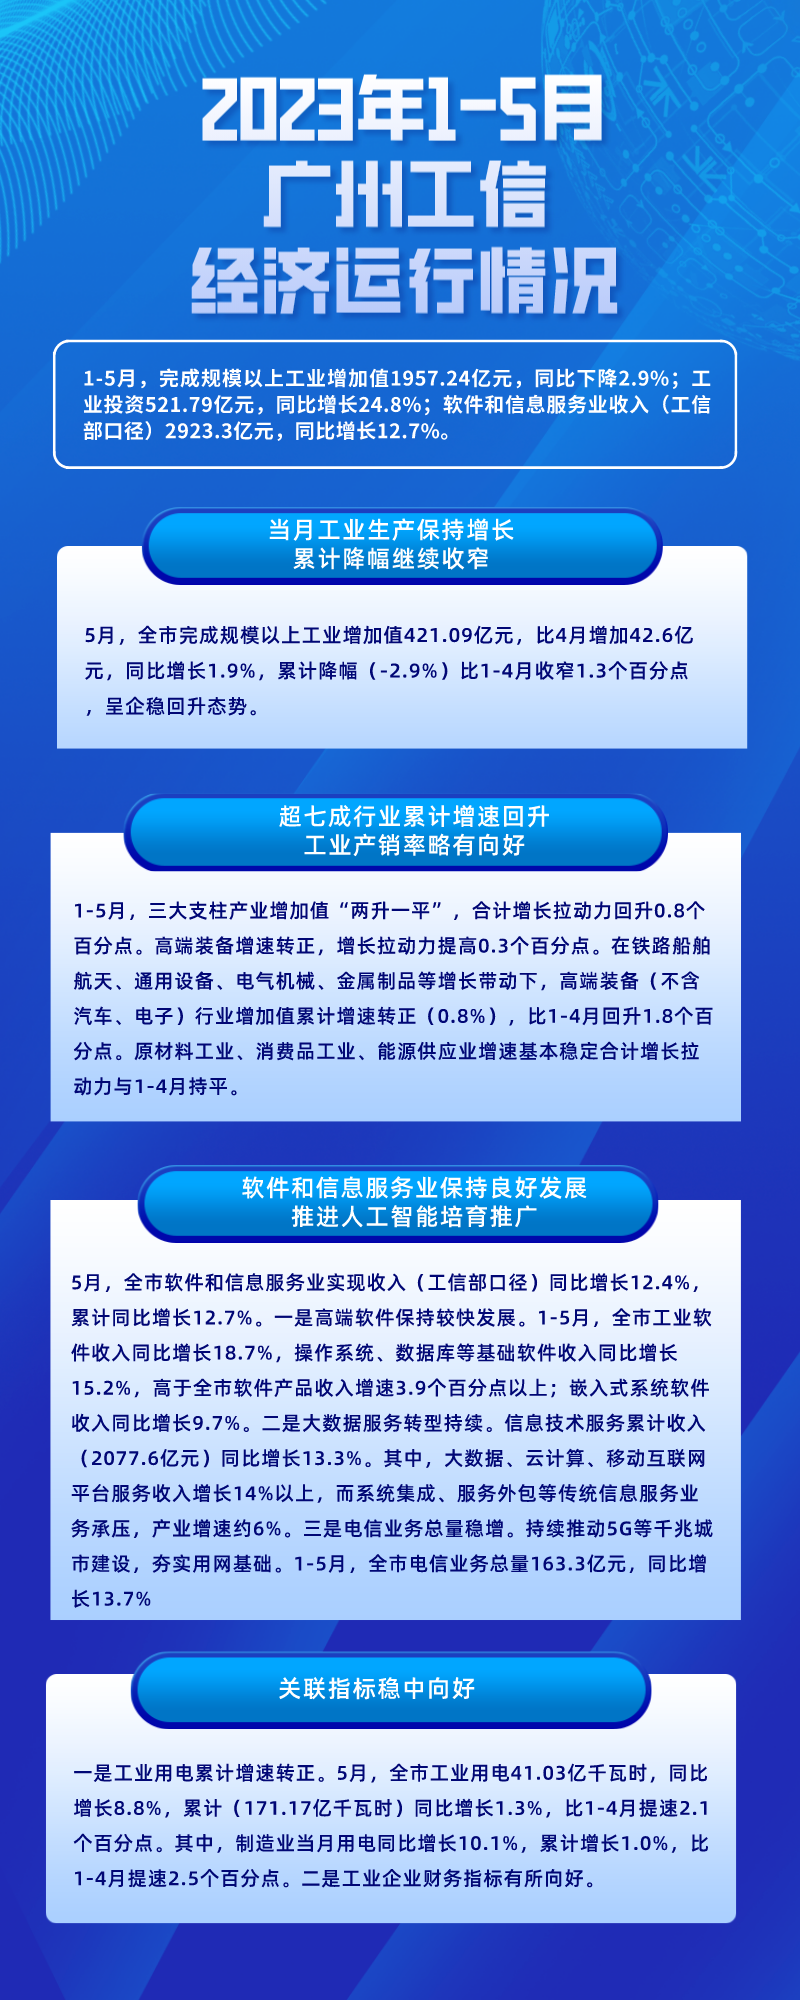 2023年1-5月广州工信经济运行情况 (1).png